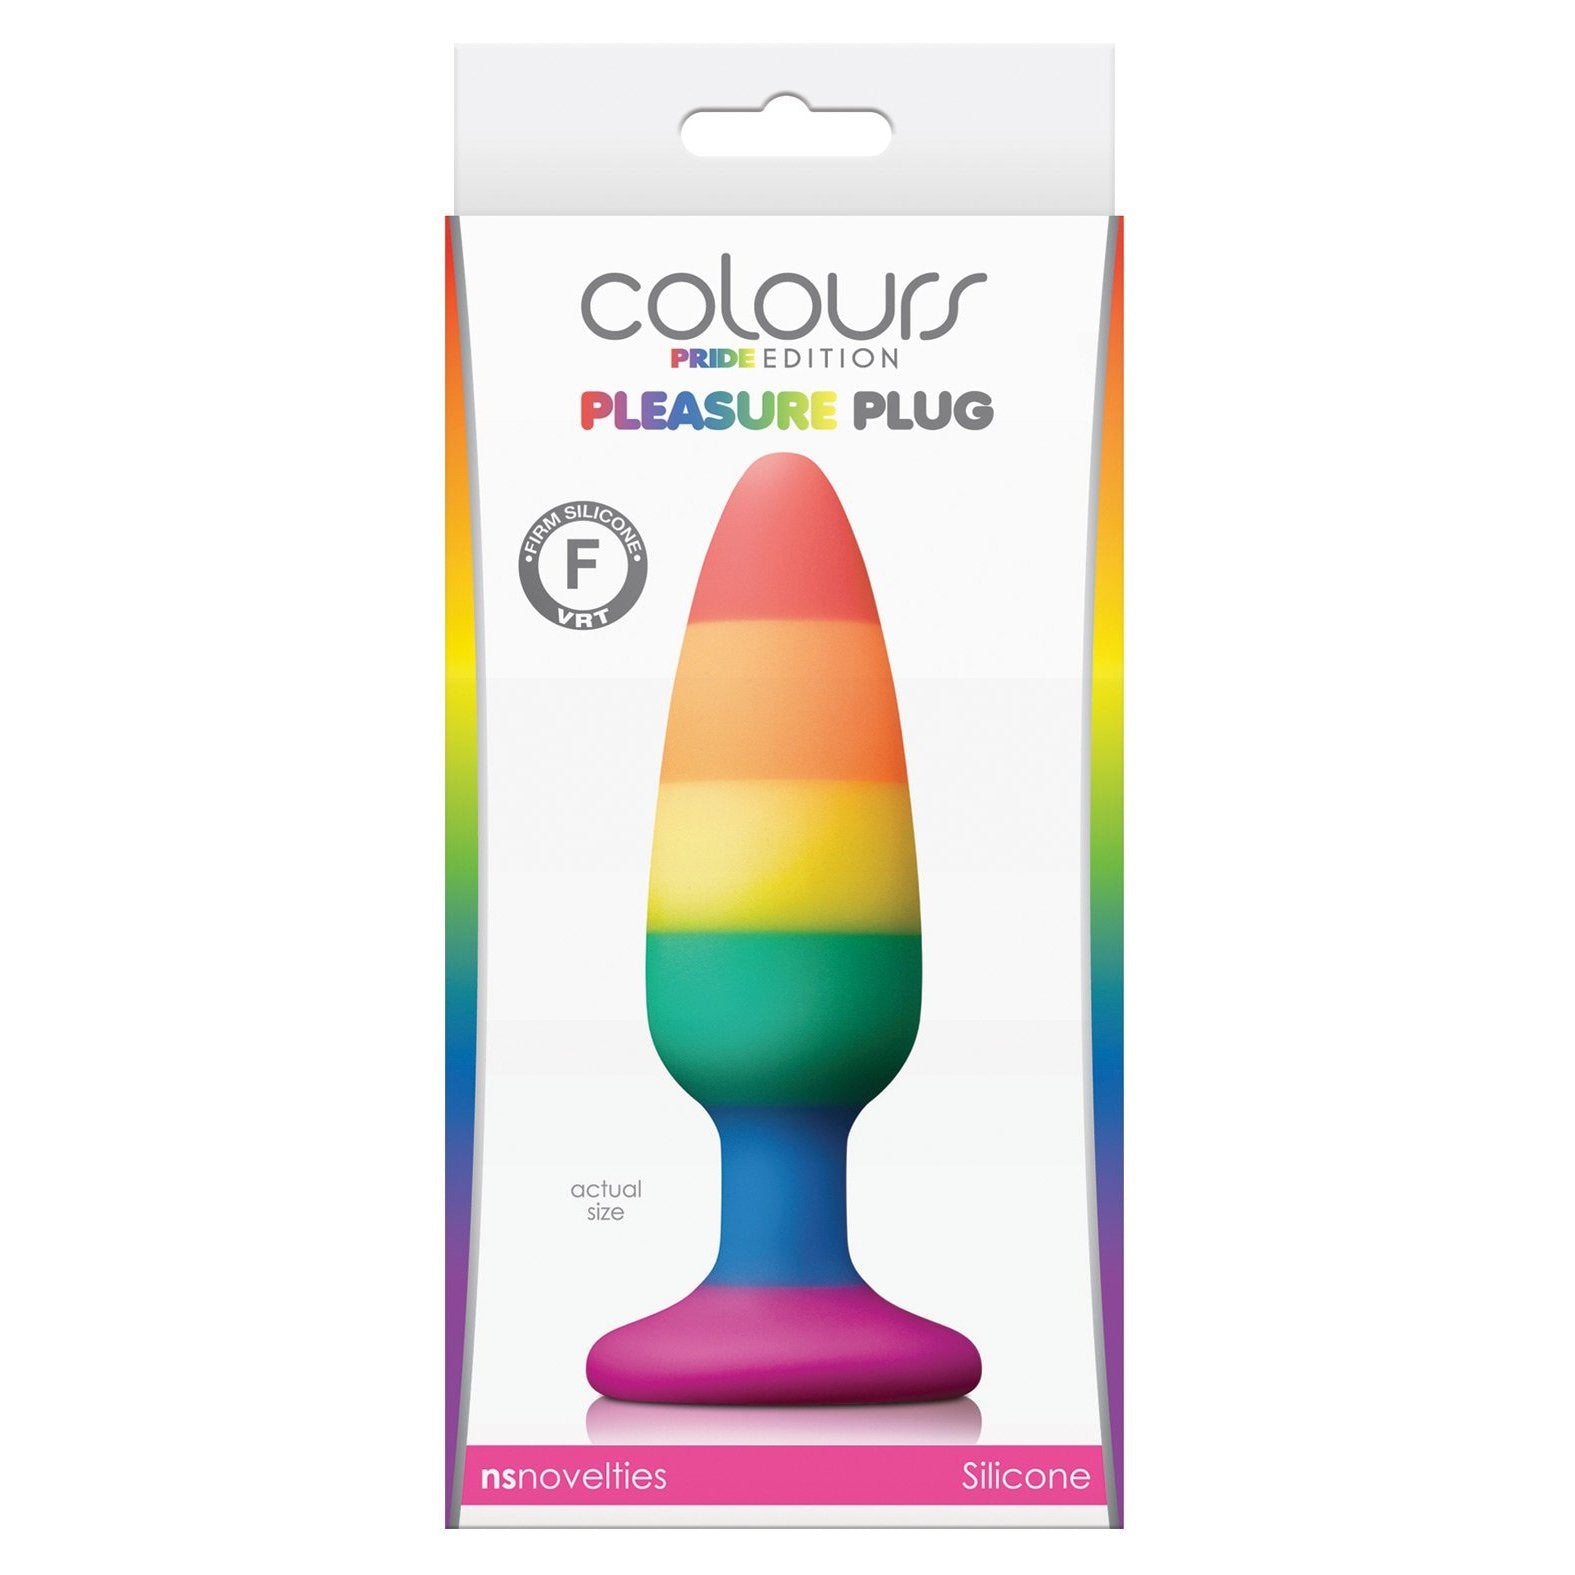 Colours Pride Edition Pleasure Plug